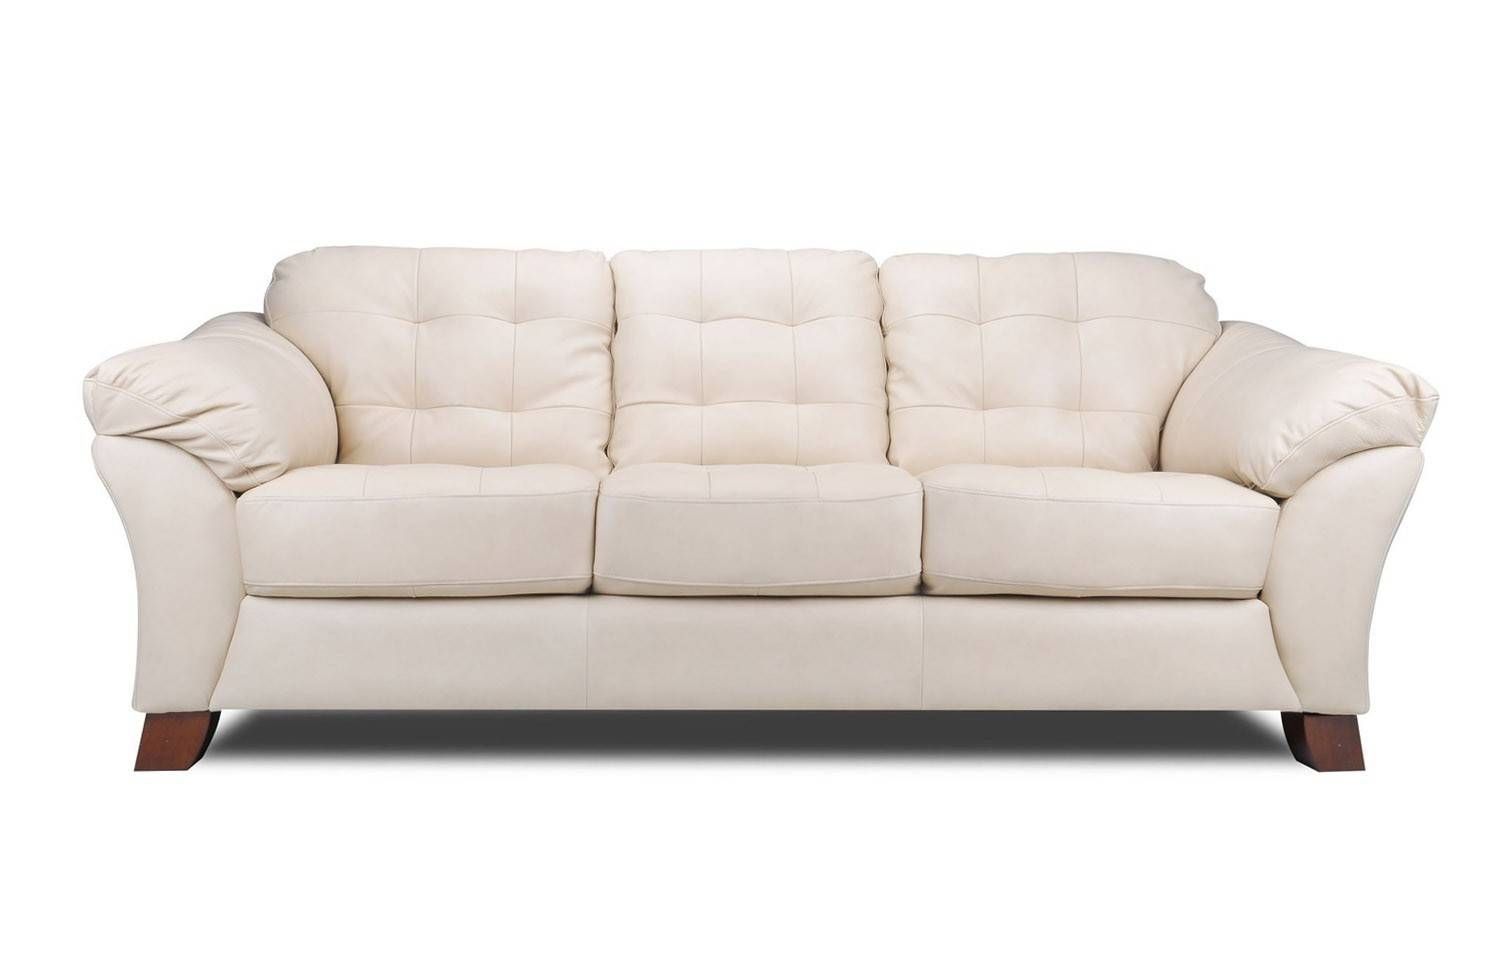 Sofa : Leather Sofas Orange County Home Design Wonderfull Regarding Sofas Orange County (View 8 of 30)